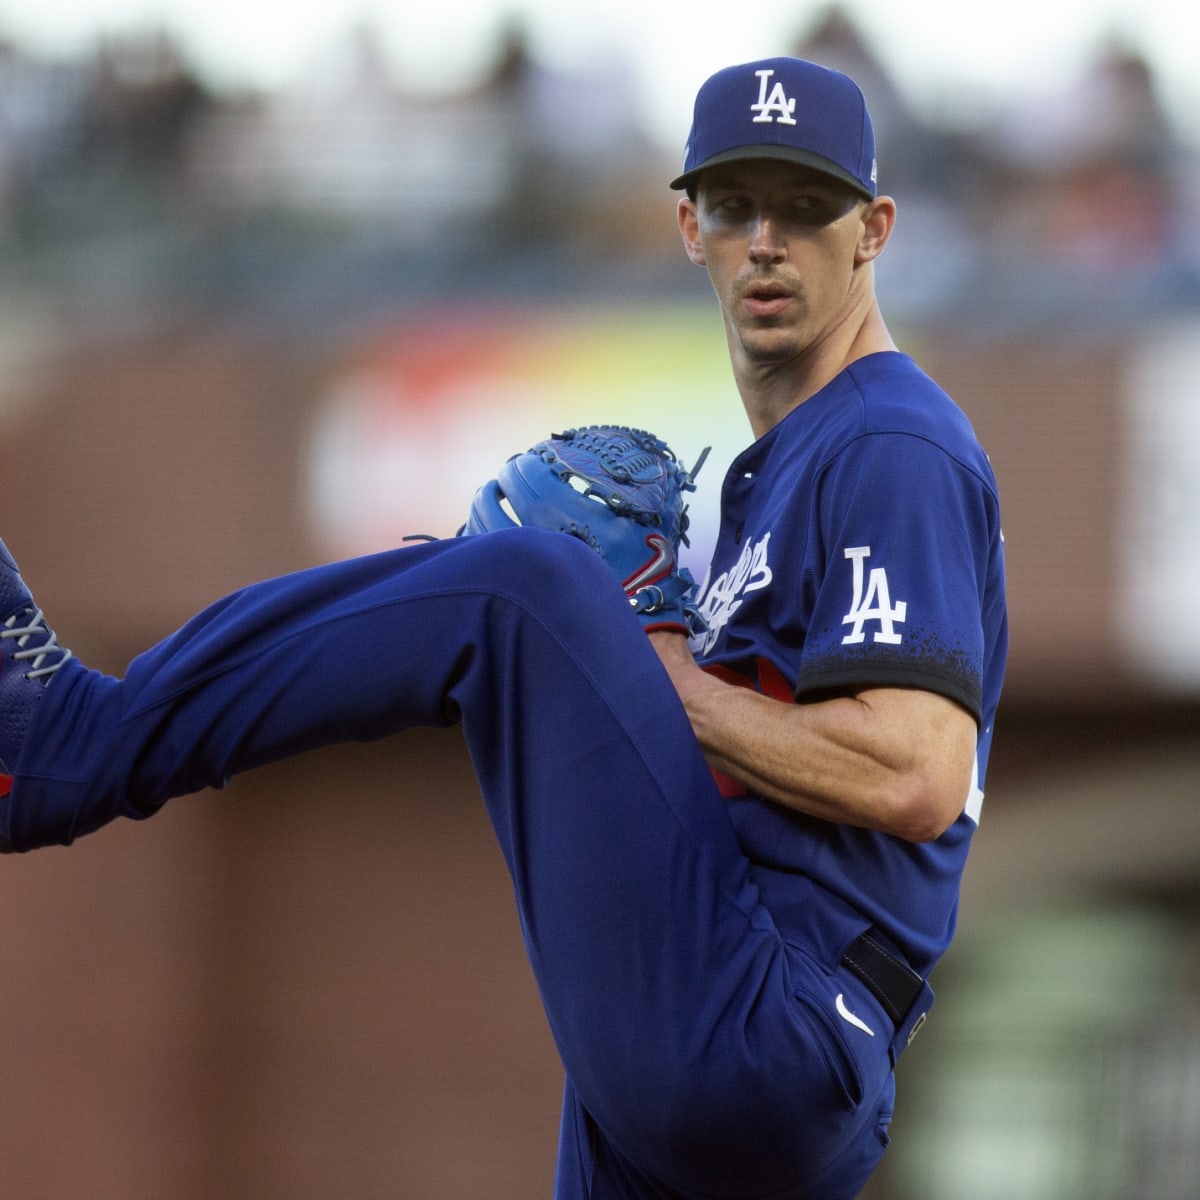 Dodgers News: Despite Not Playing, Walker Buehler Will Make An